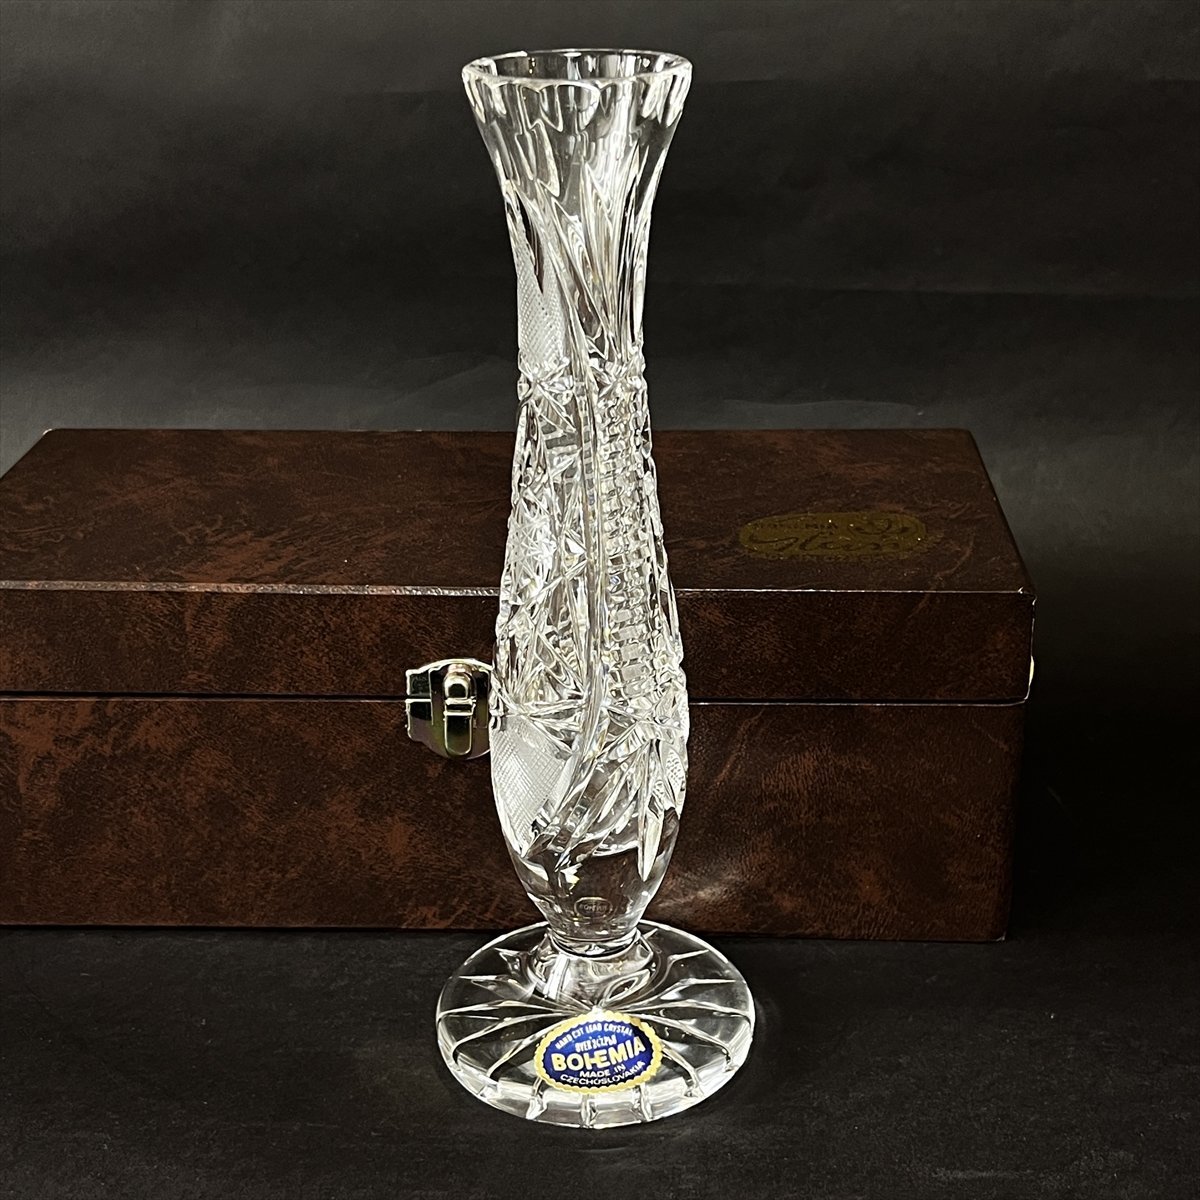 ◆ ボヘミアグラス BOHEMIA GLASS クリスタル 切子 カットグラス 花器 花瓶 ◆の画像1